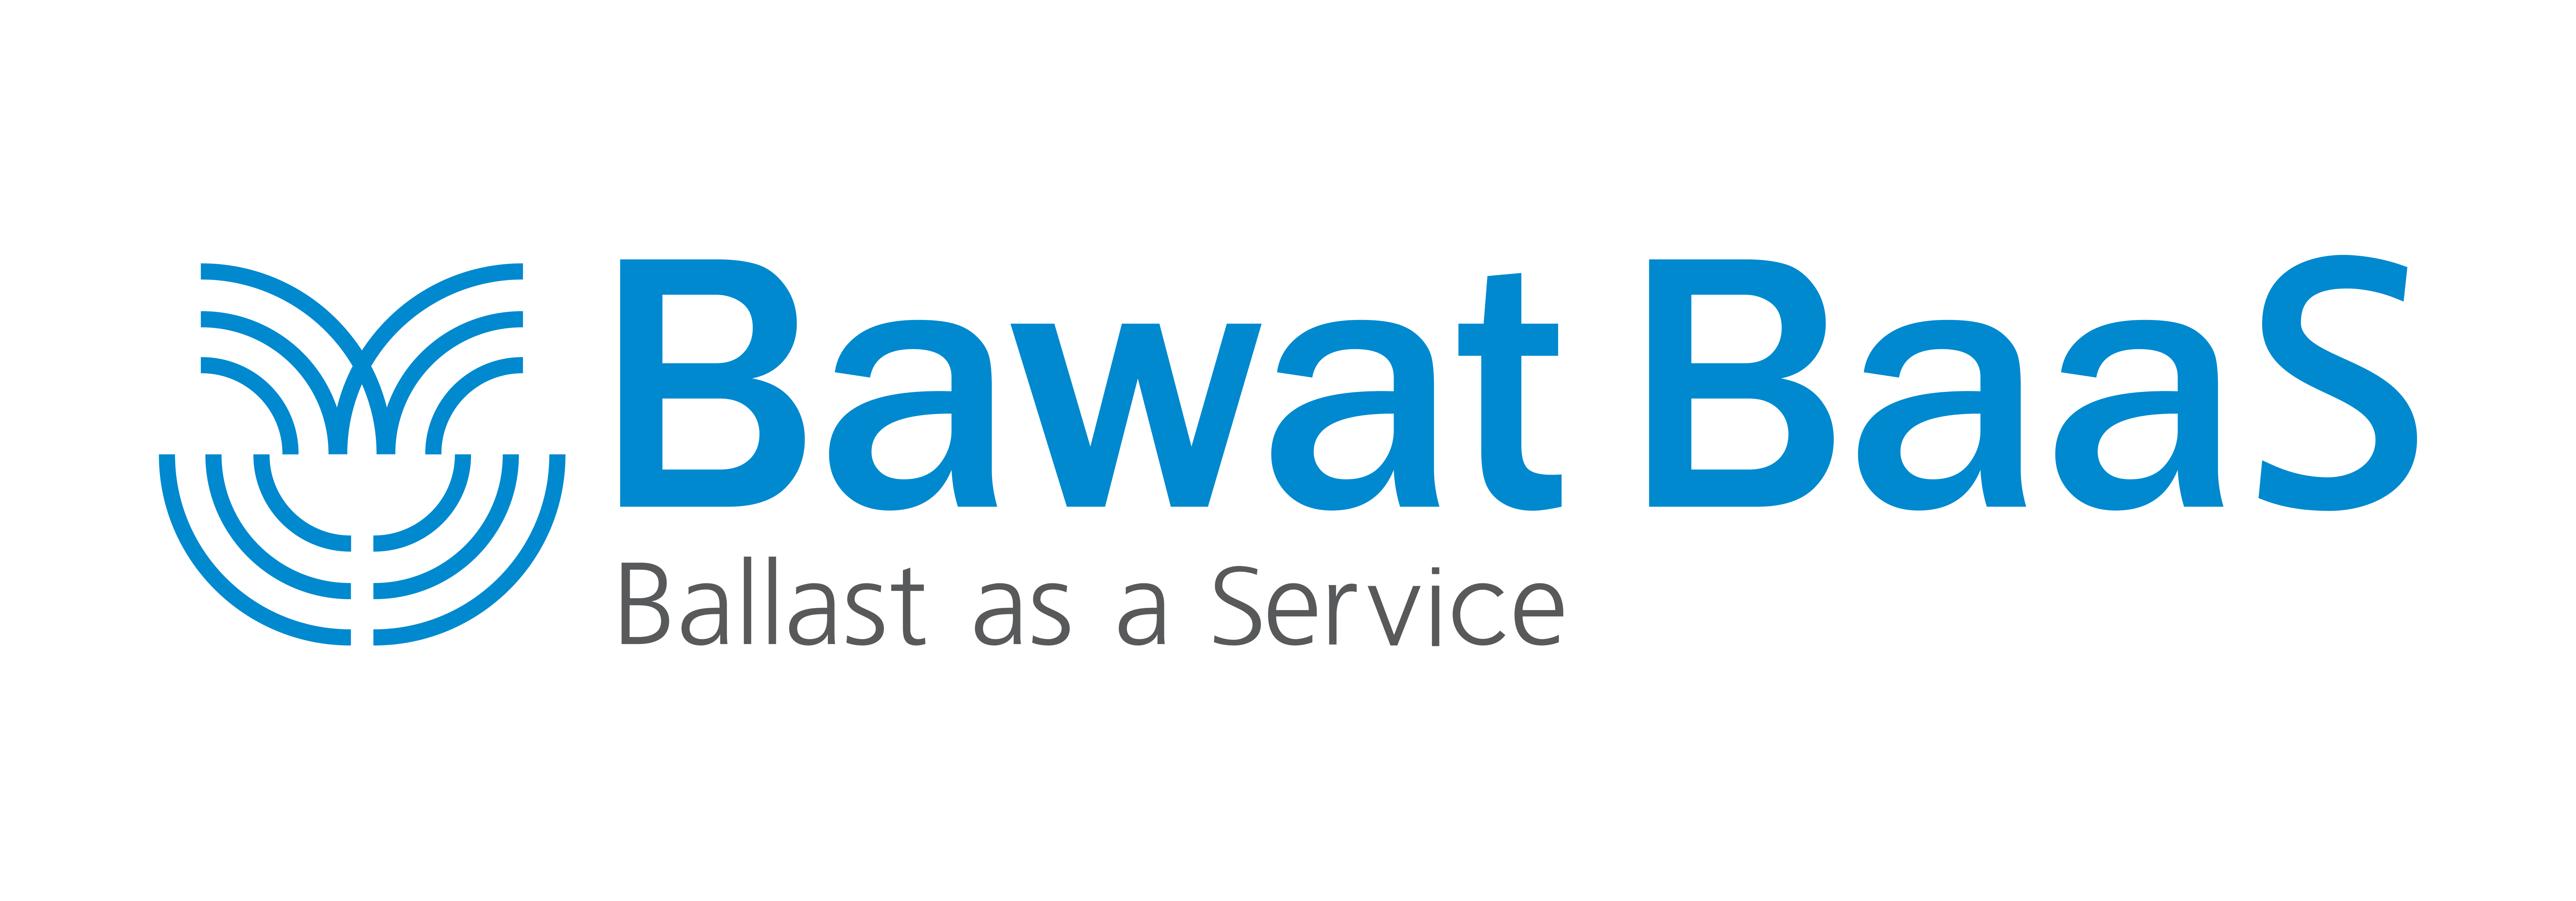 Bawat - Ballast water management